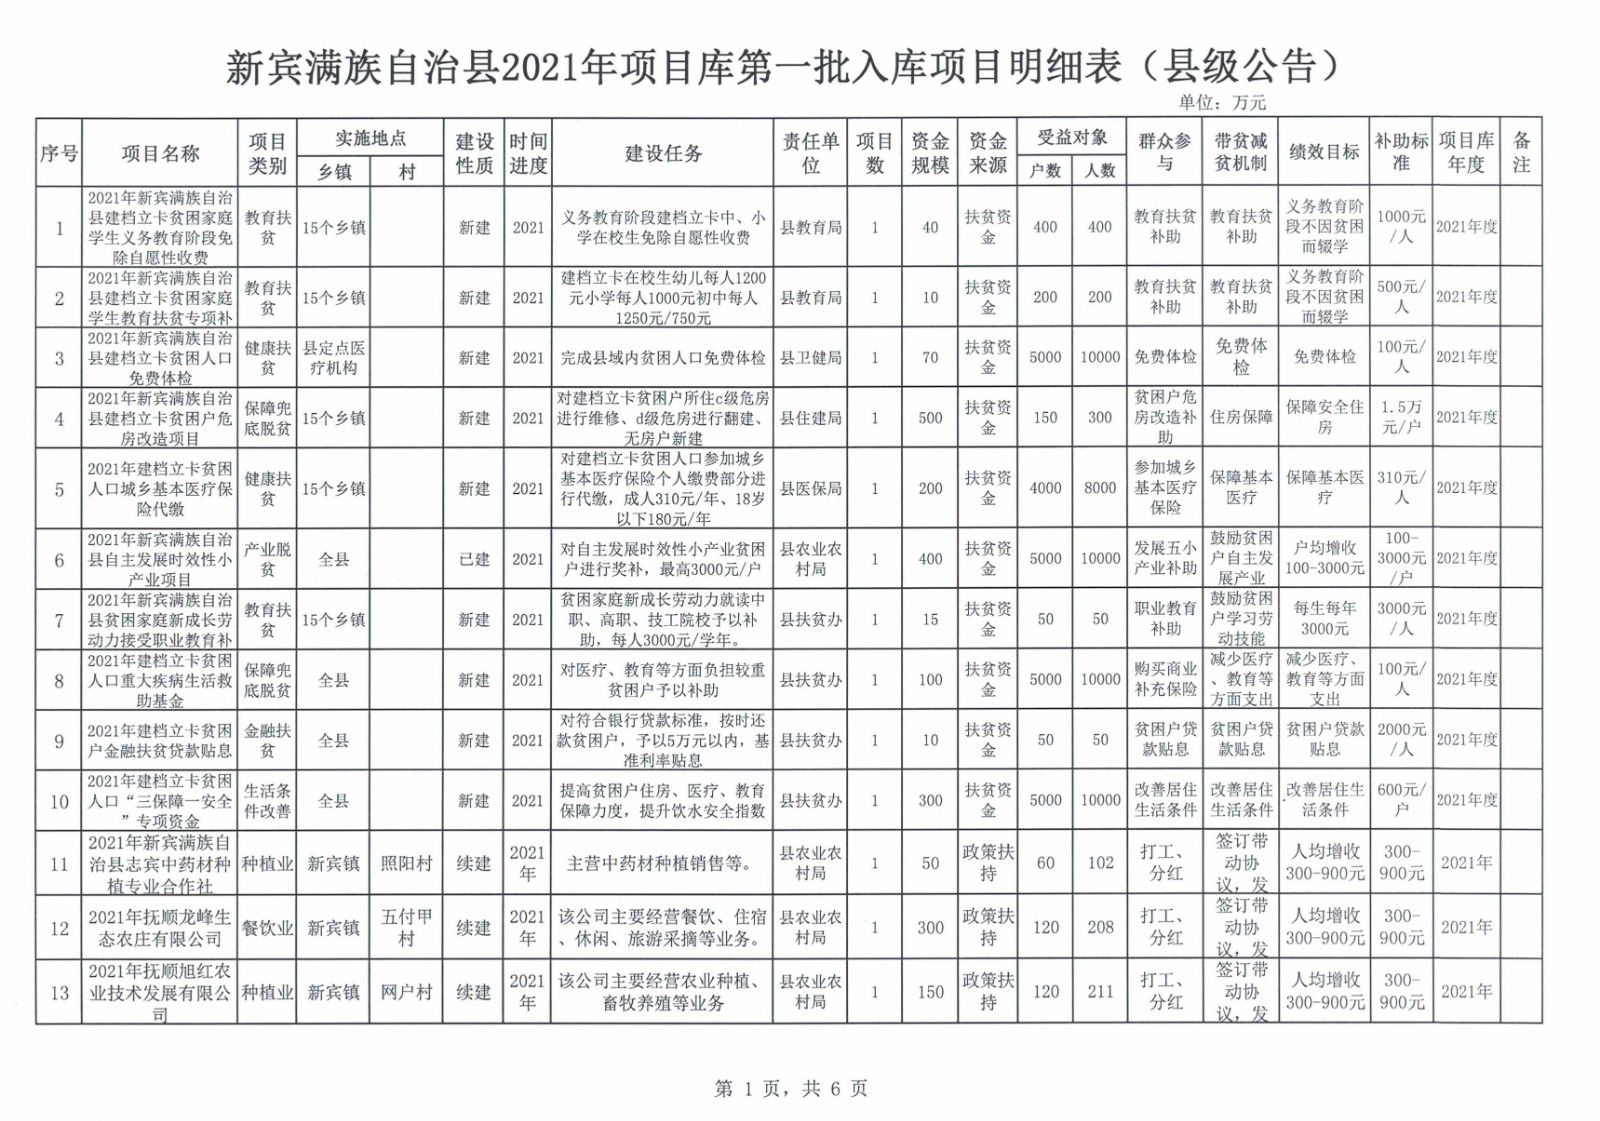 新宾满族自治县2021年项目库第一批入库项目明细表（县级公告）.jpg